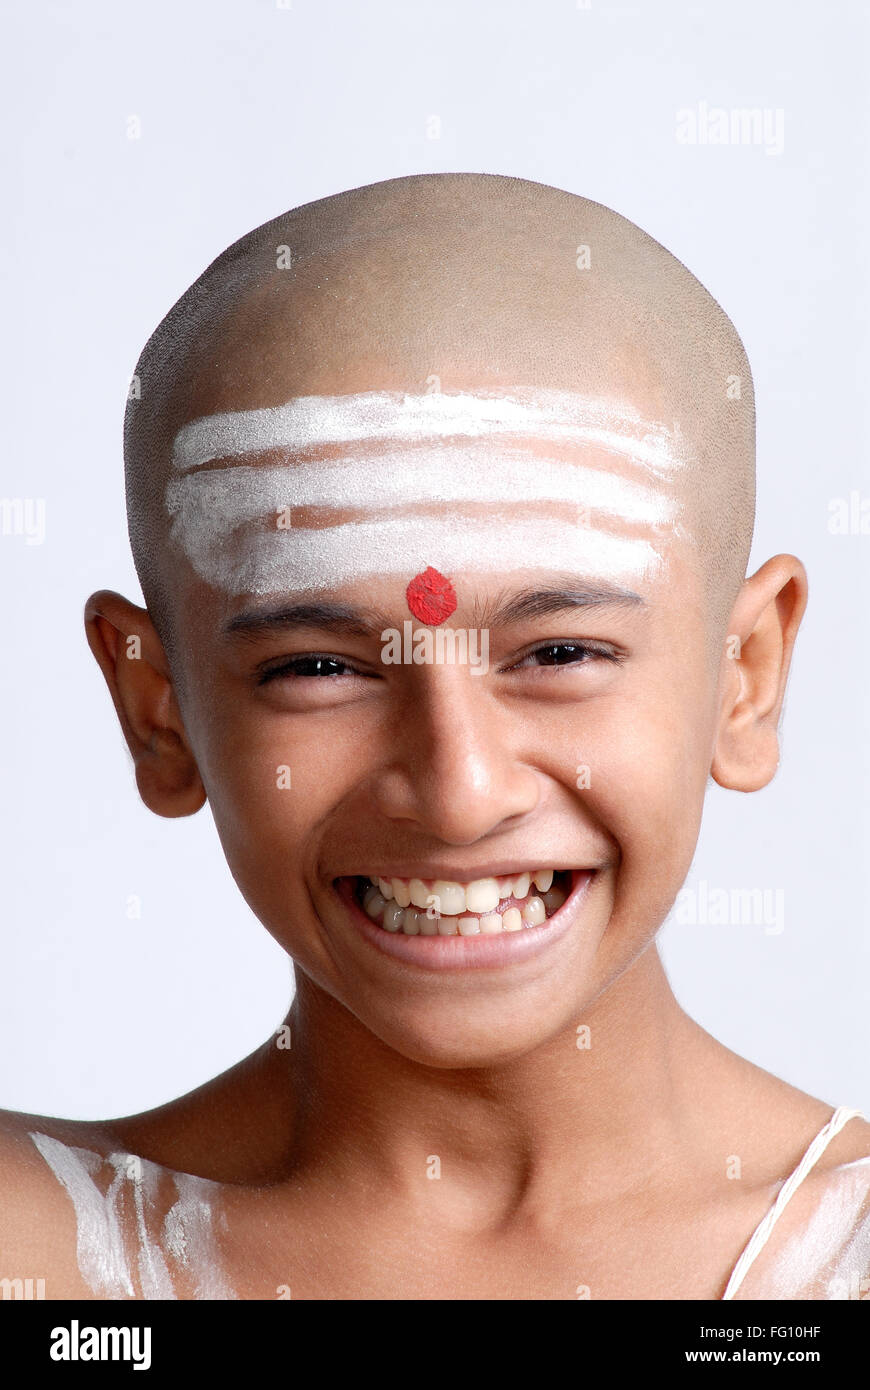 Indien hindou chauve garçon avec le rouge tilak blanc shaivite symbole sur le front Inde MR#719 Banque D'Images